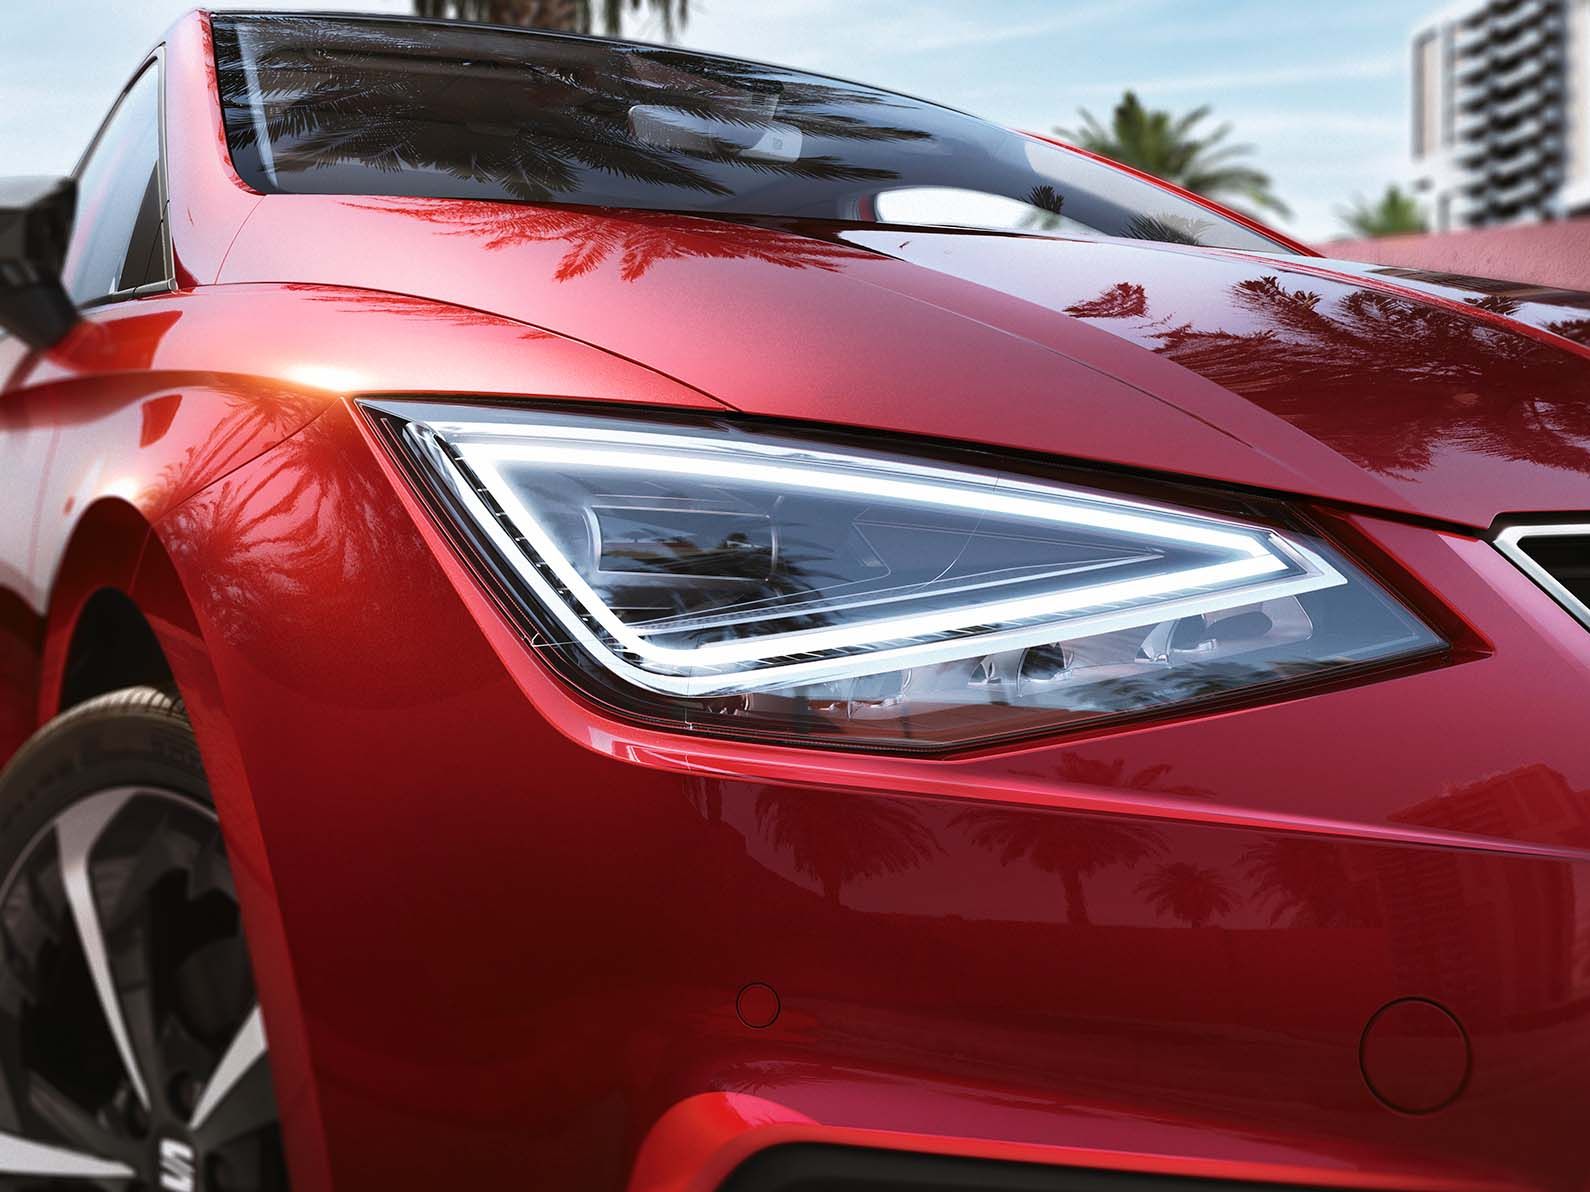 Detailansicht eines roten SEAT Ibiza mit LED-Scheinwerfer